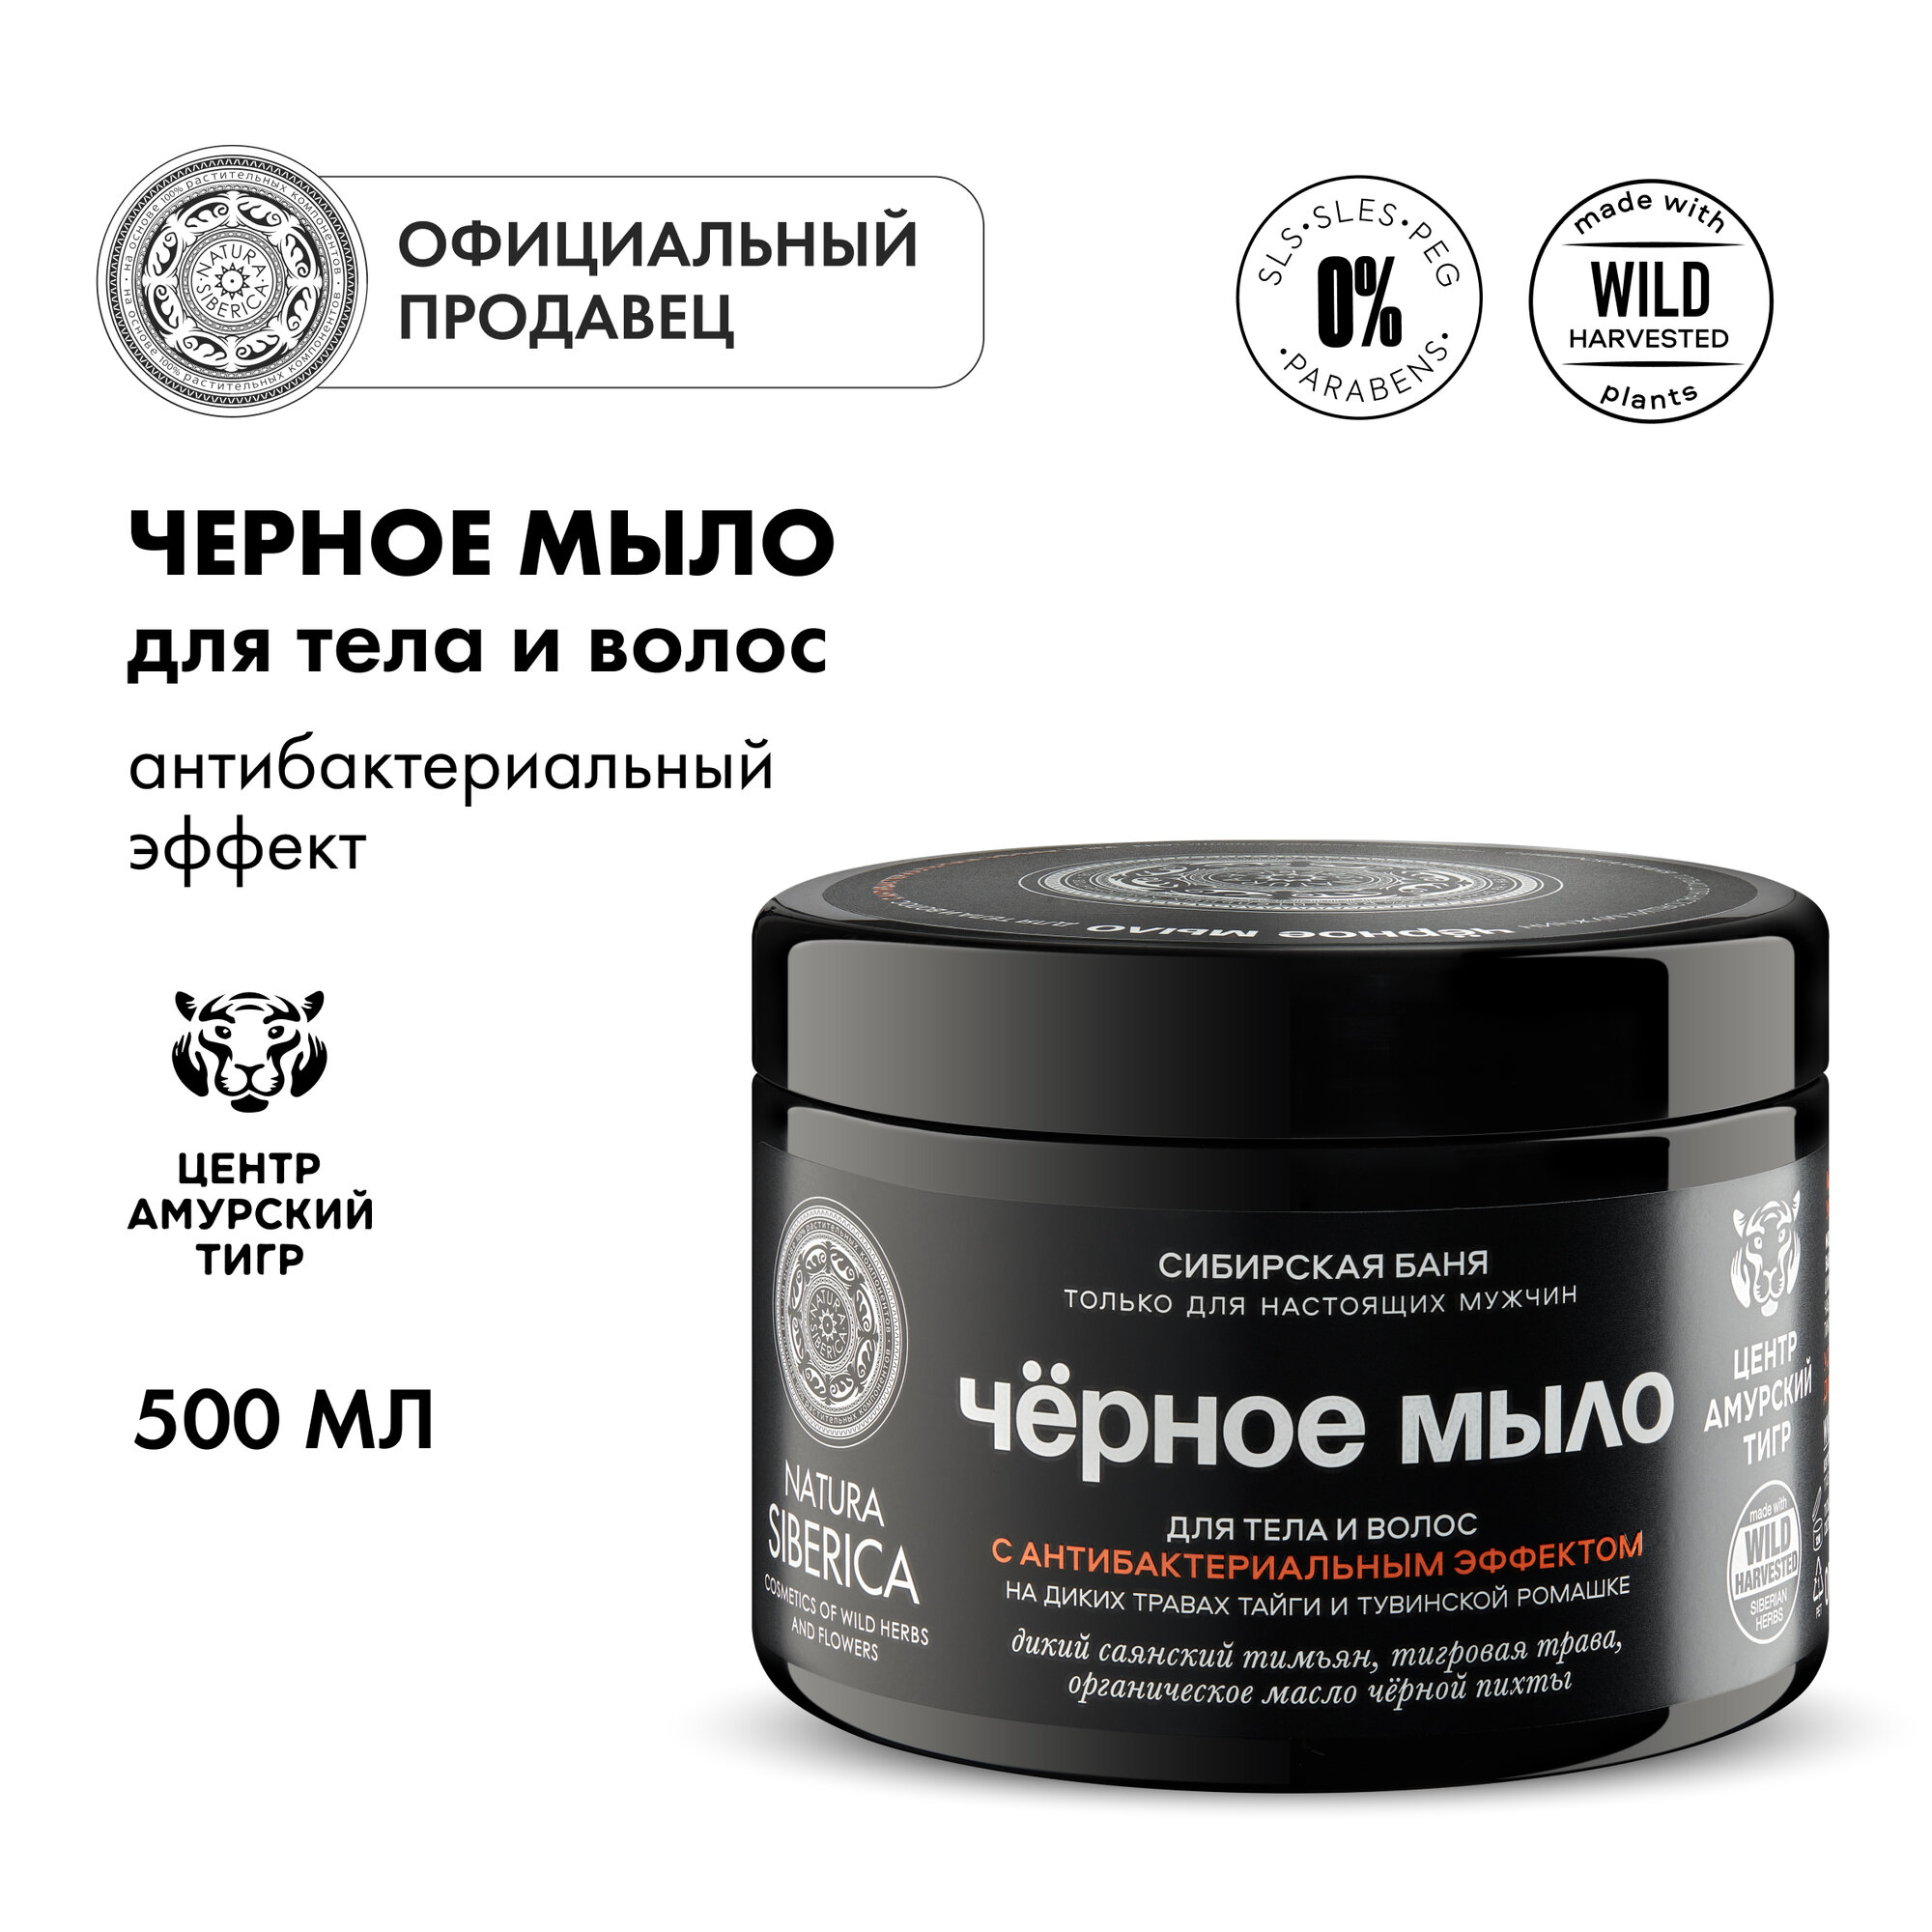 Черное мыло для тела и волос с антибактериальным эффектом «Сибирская баня» Natura Siberica, MEN, 500 мл